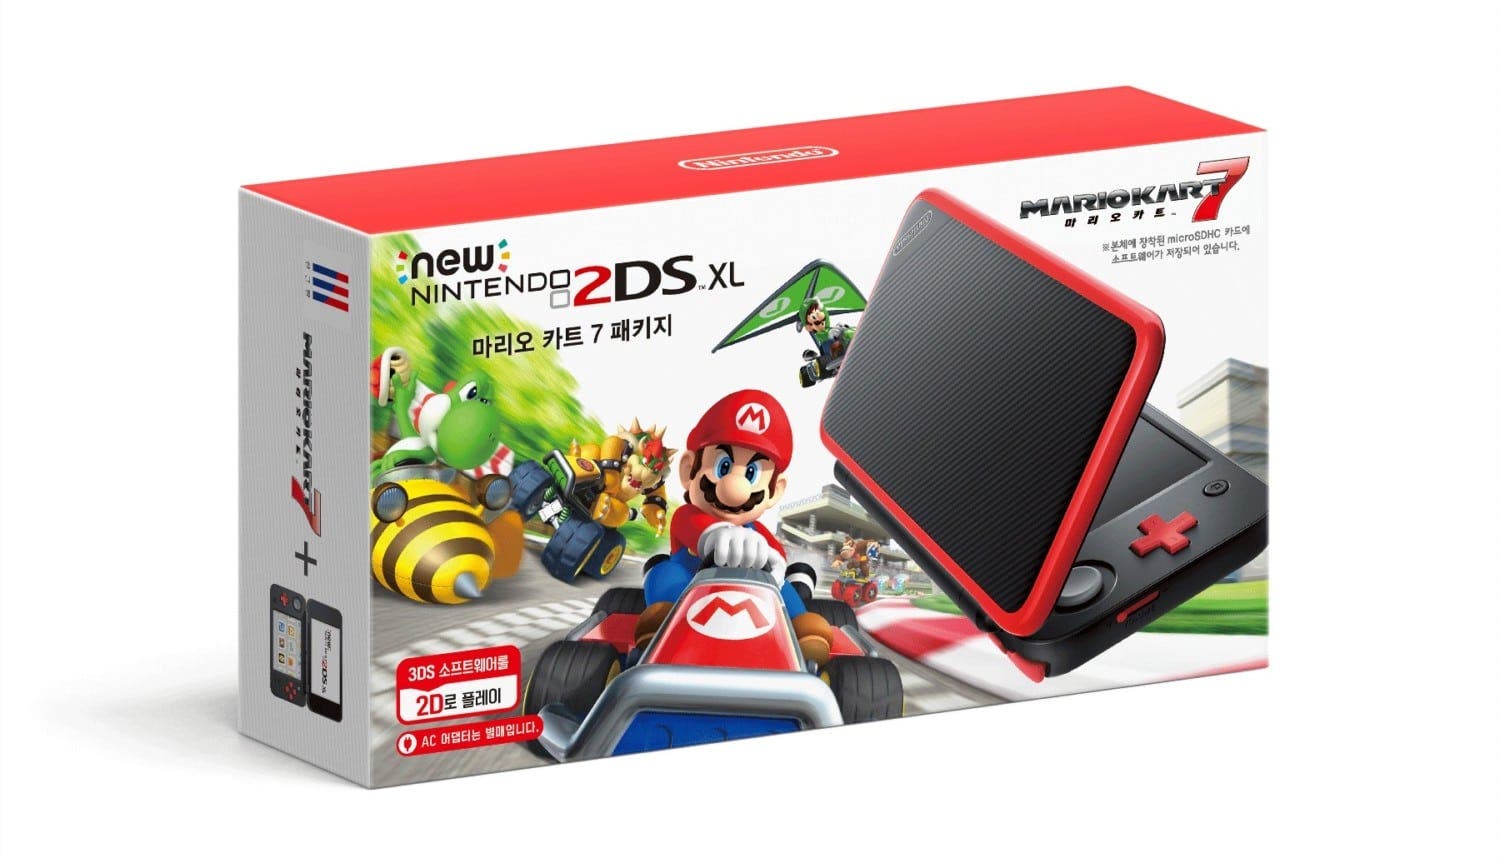 Corea del Sur recibirá el pack de New Nintendo 2DS XL Rojo + Negro con Mario Kart 7